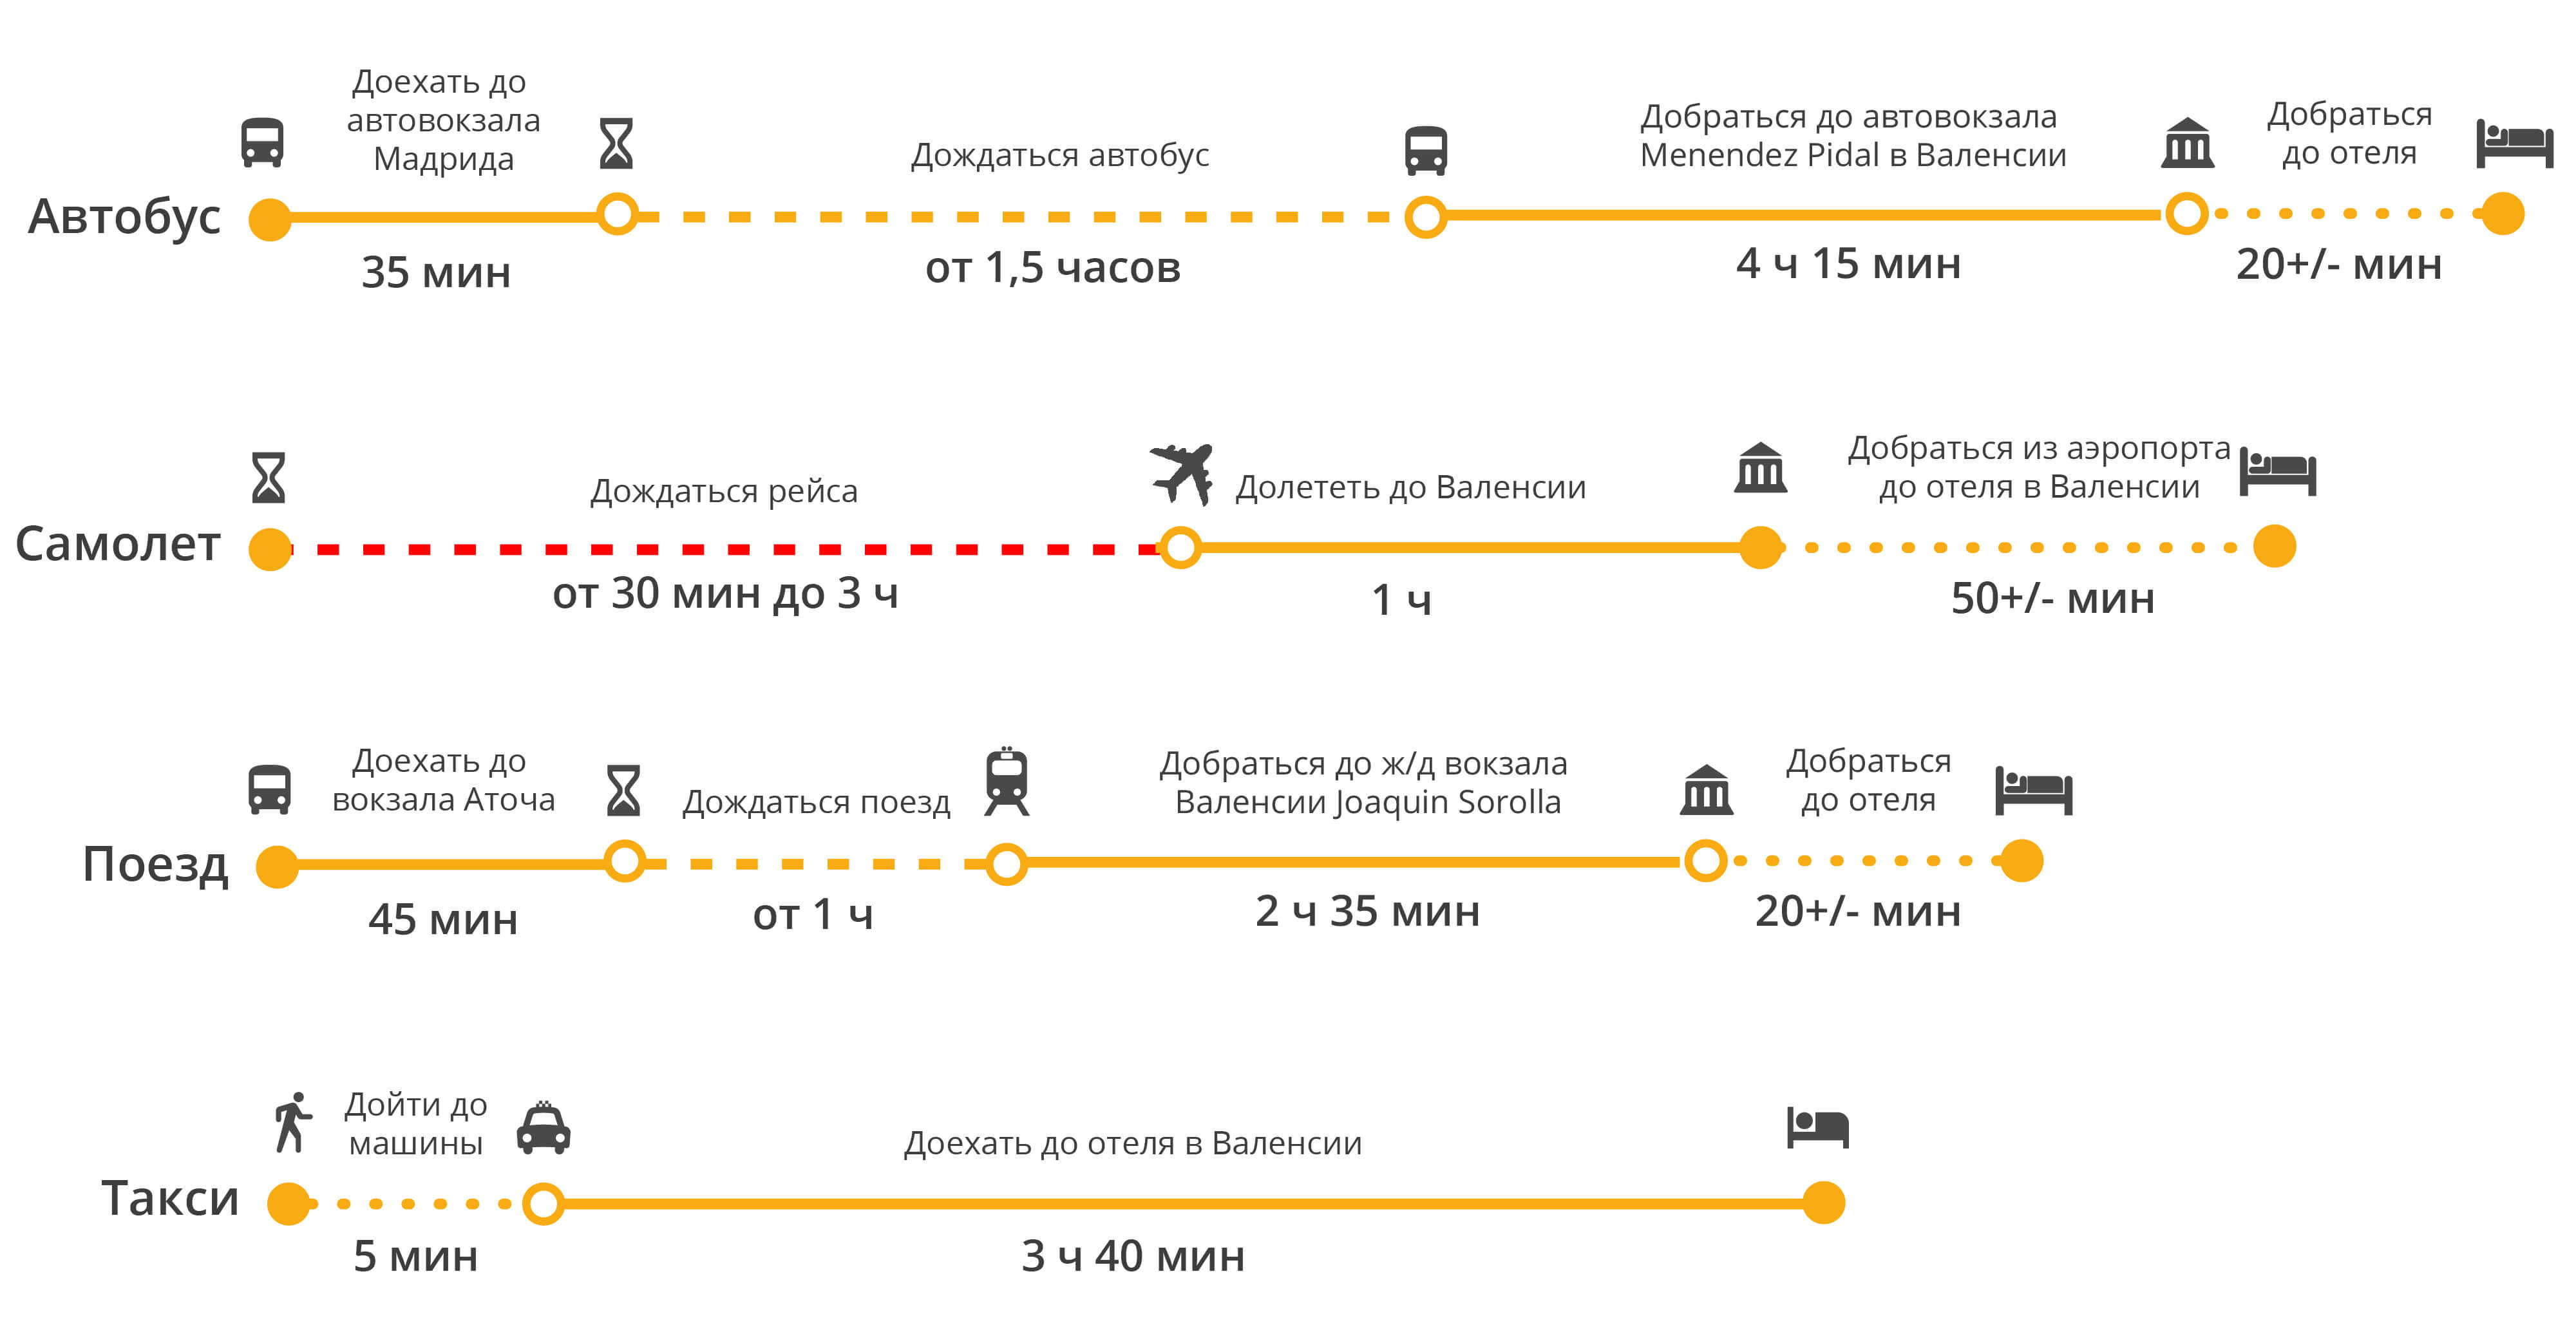 Как добраться до автовокзала на автобусе